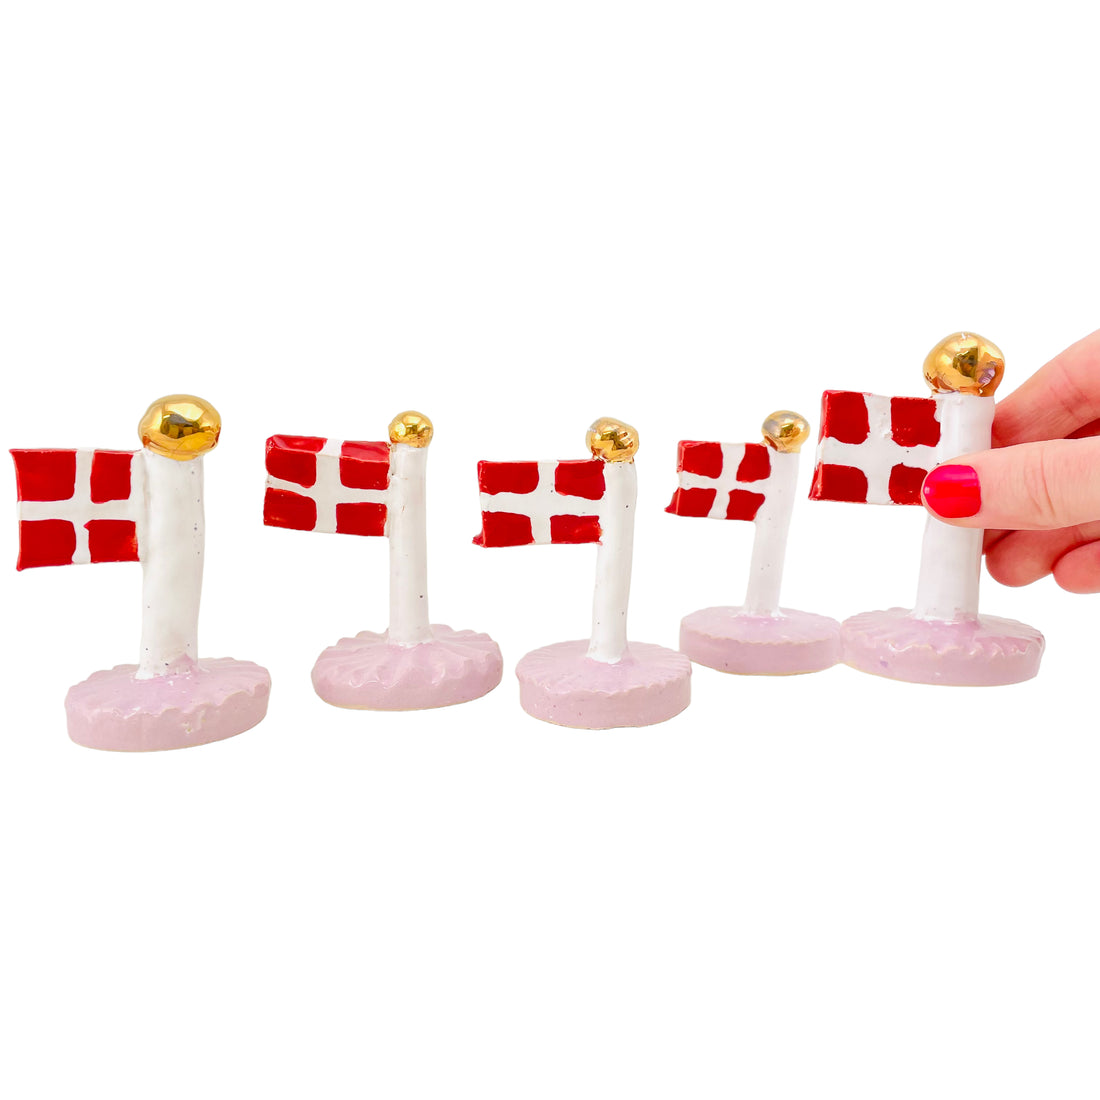 Special Edition Bordflag med Lilla Fod og Guld Knop